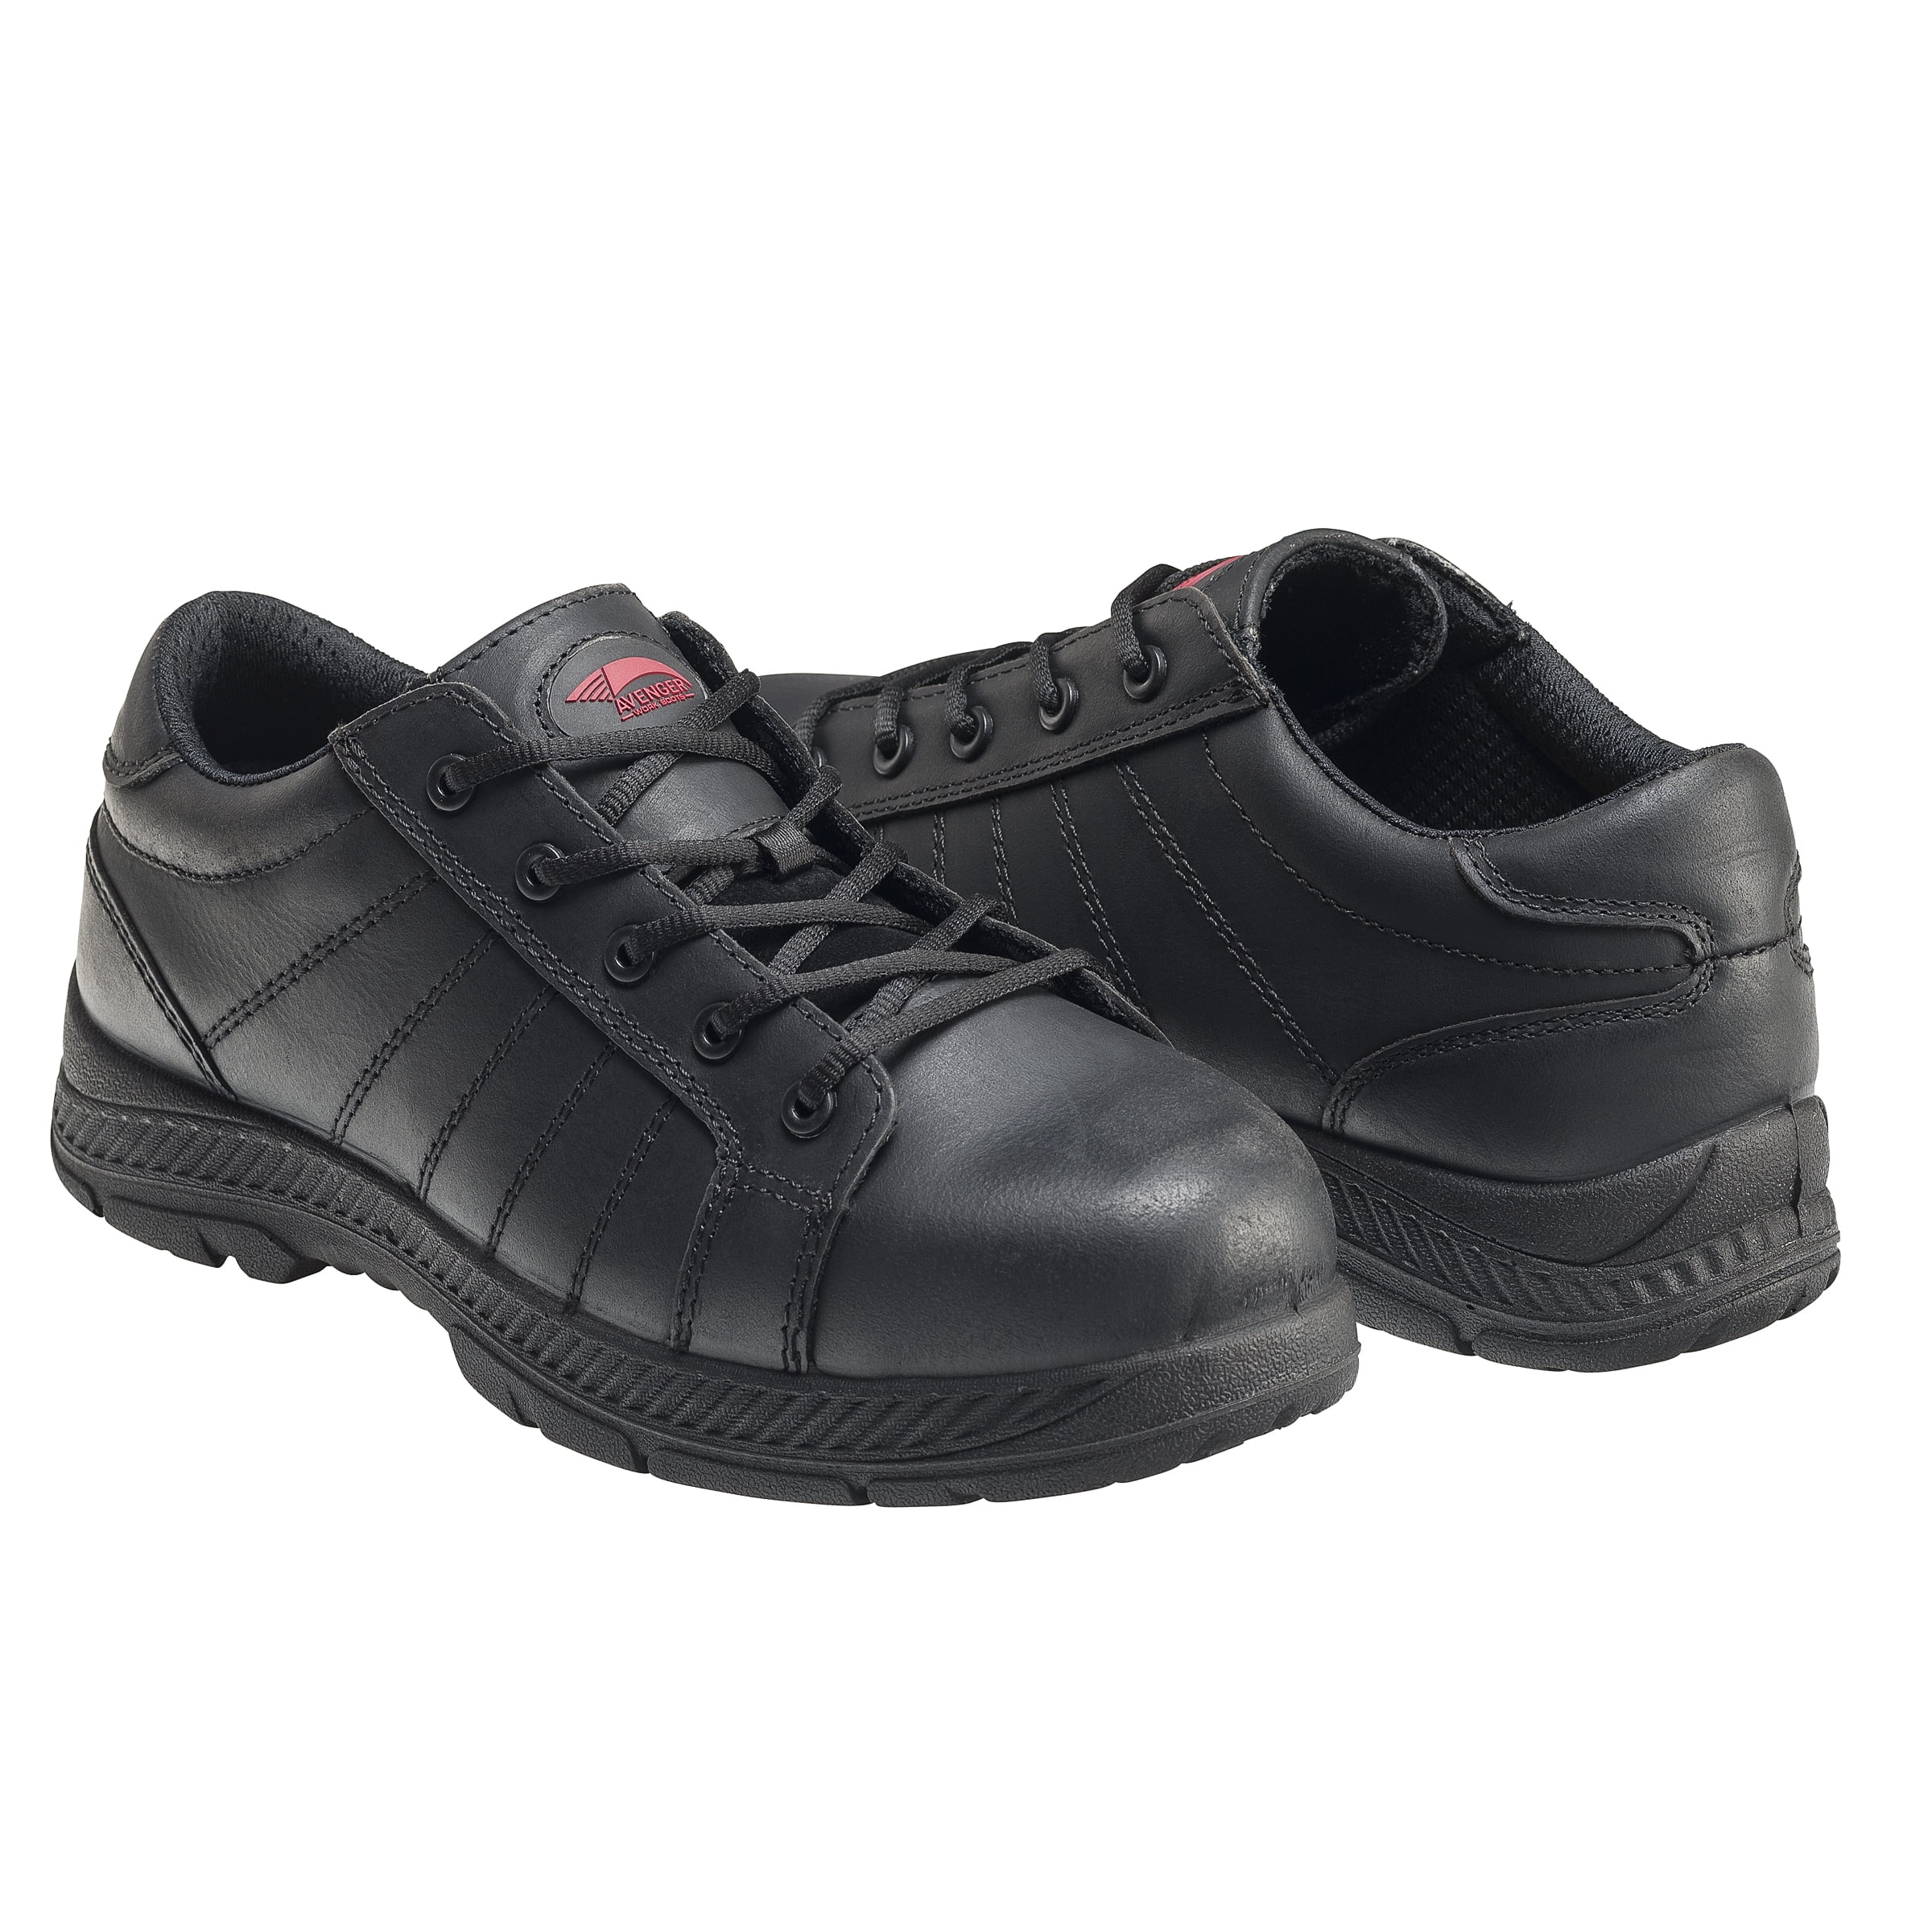 steel toe slip resistant work shoes